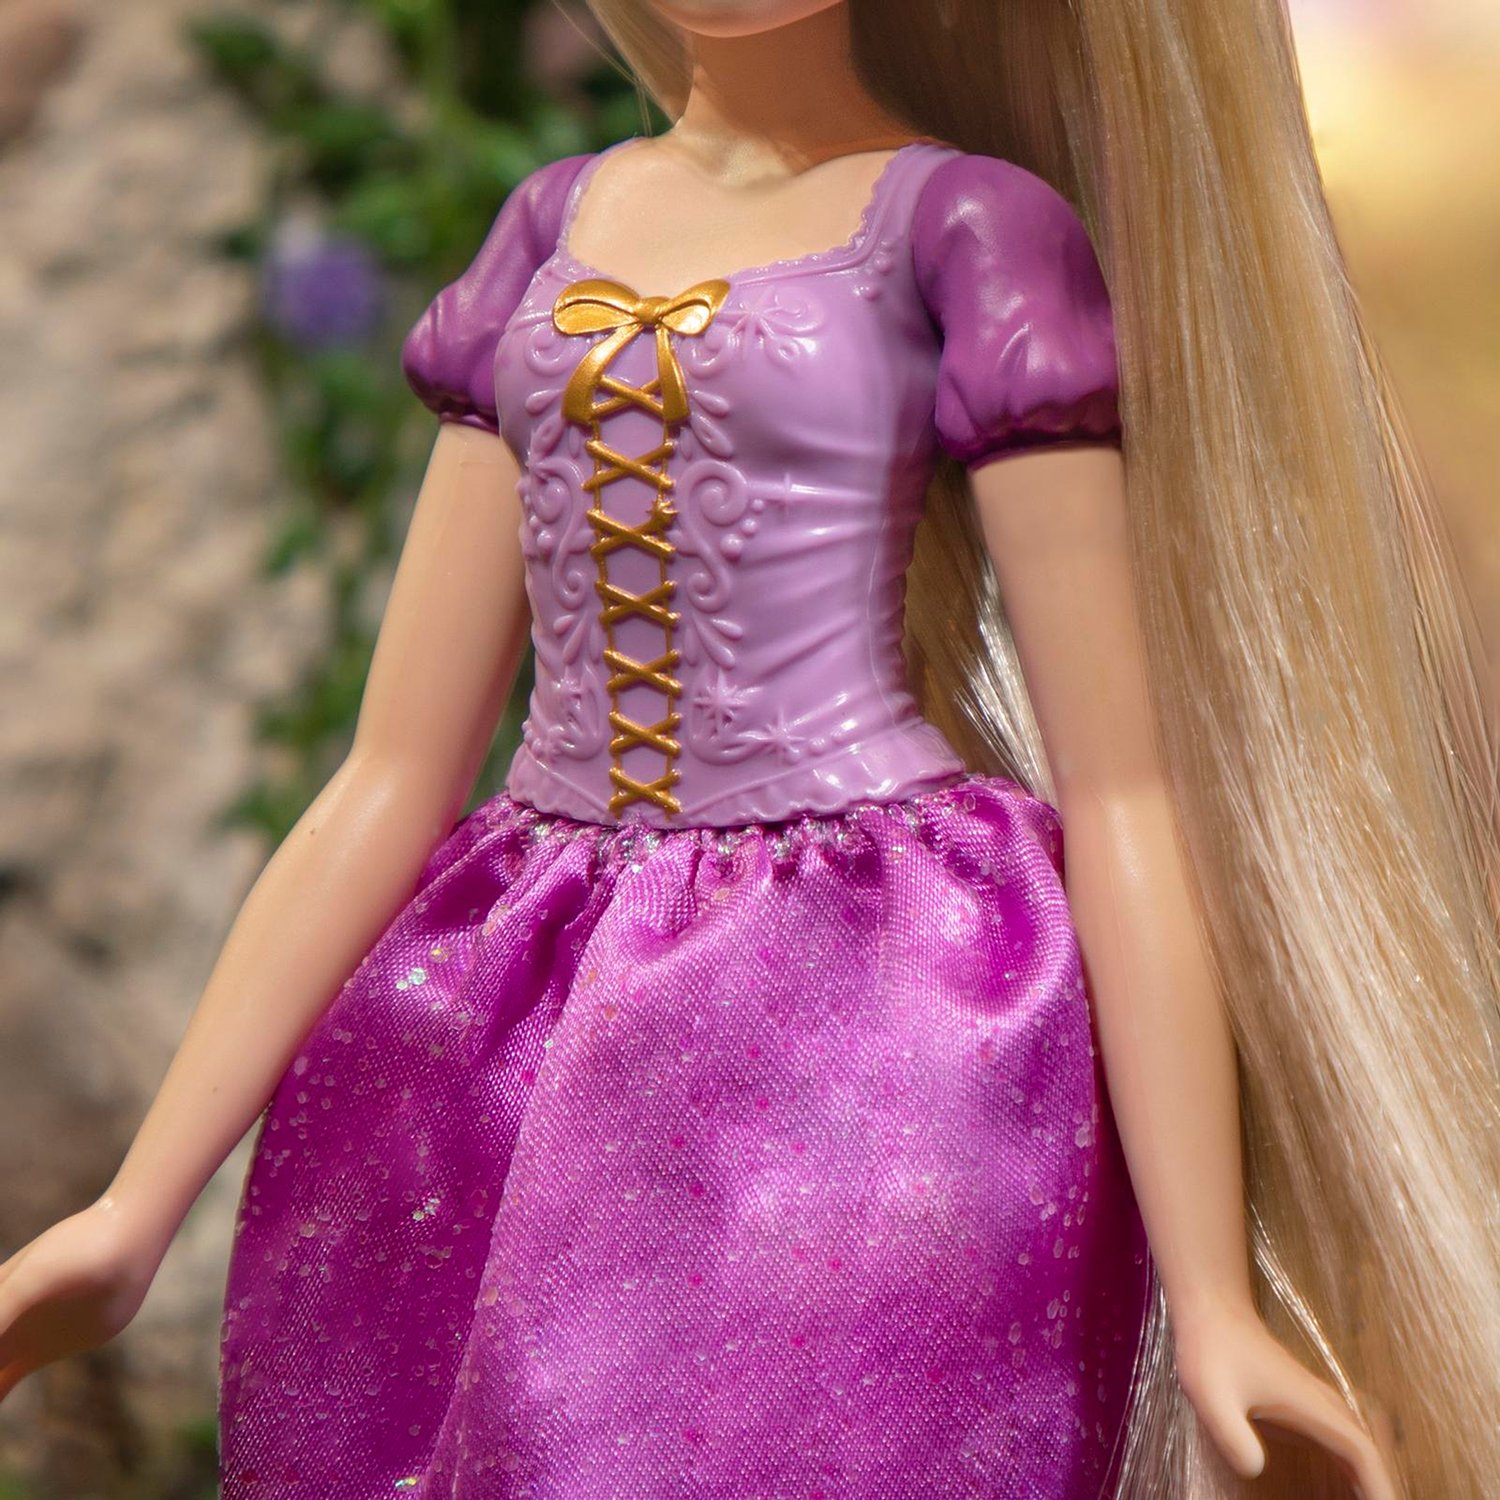 Кукла Hasbro Disney Princess Рапунцель Локоны, 18 см, F1057